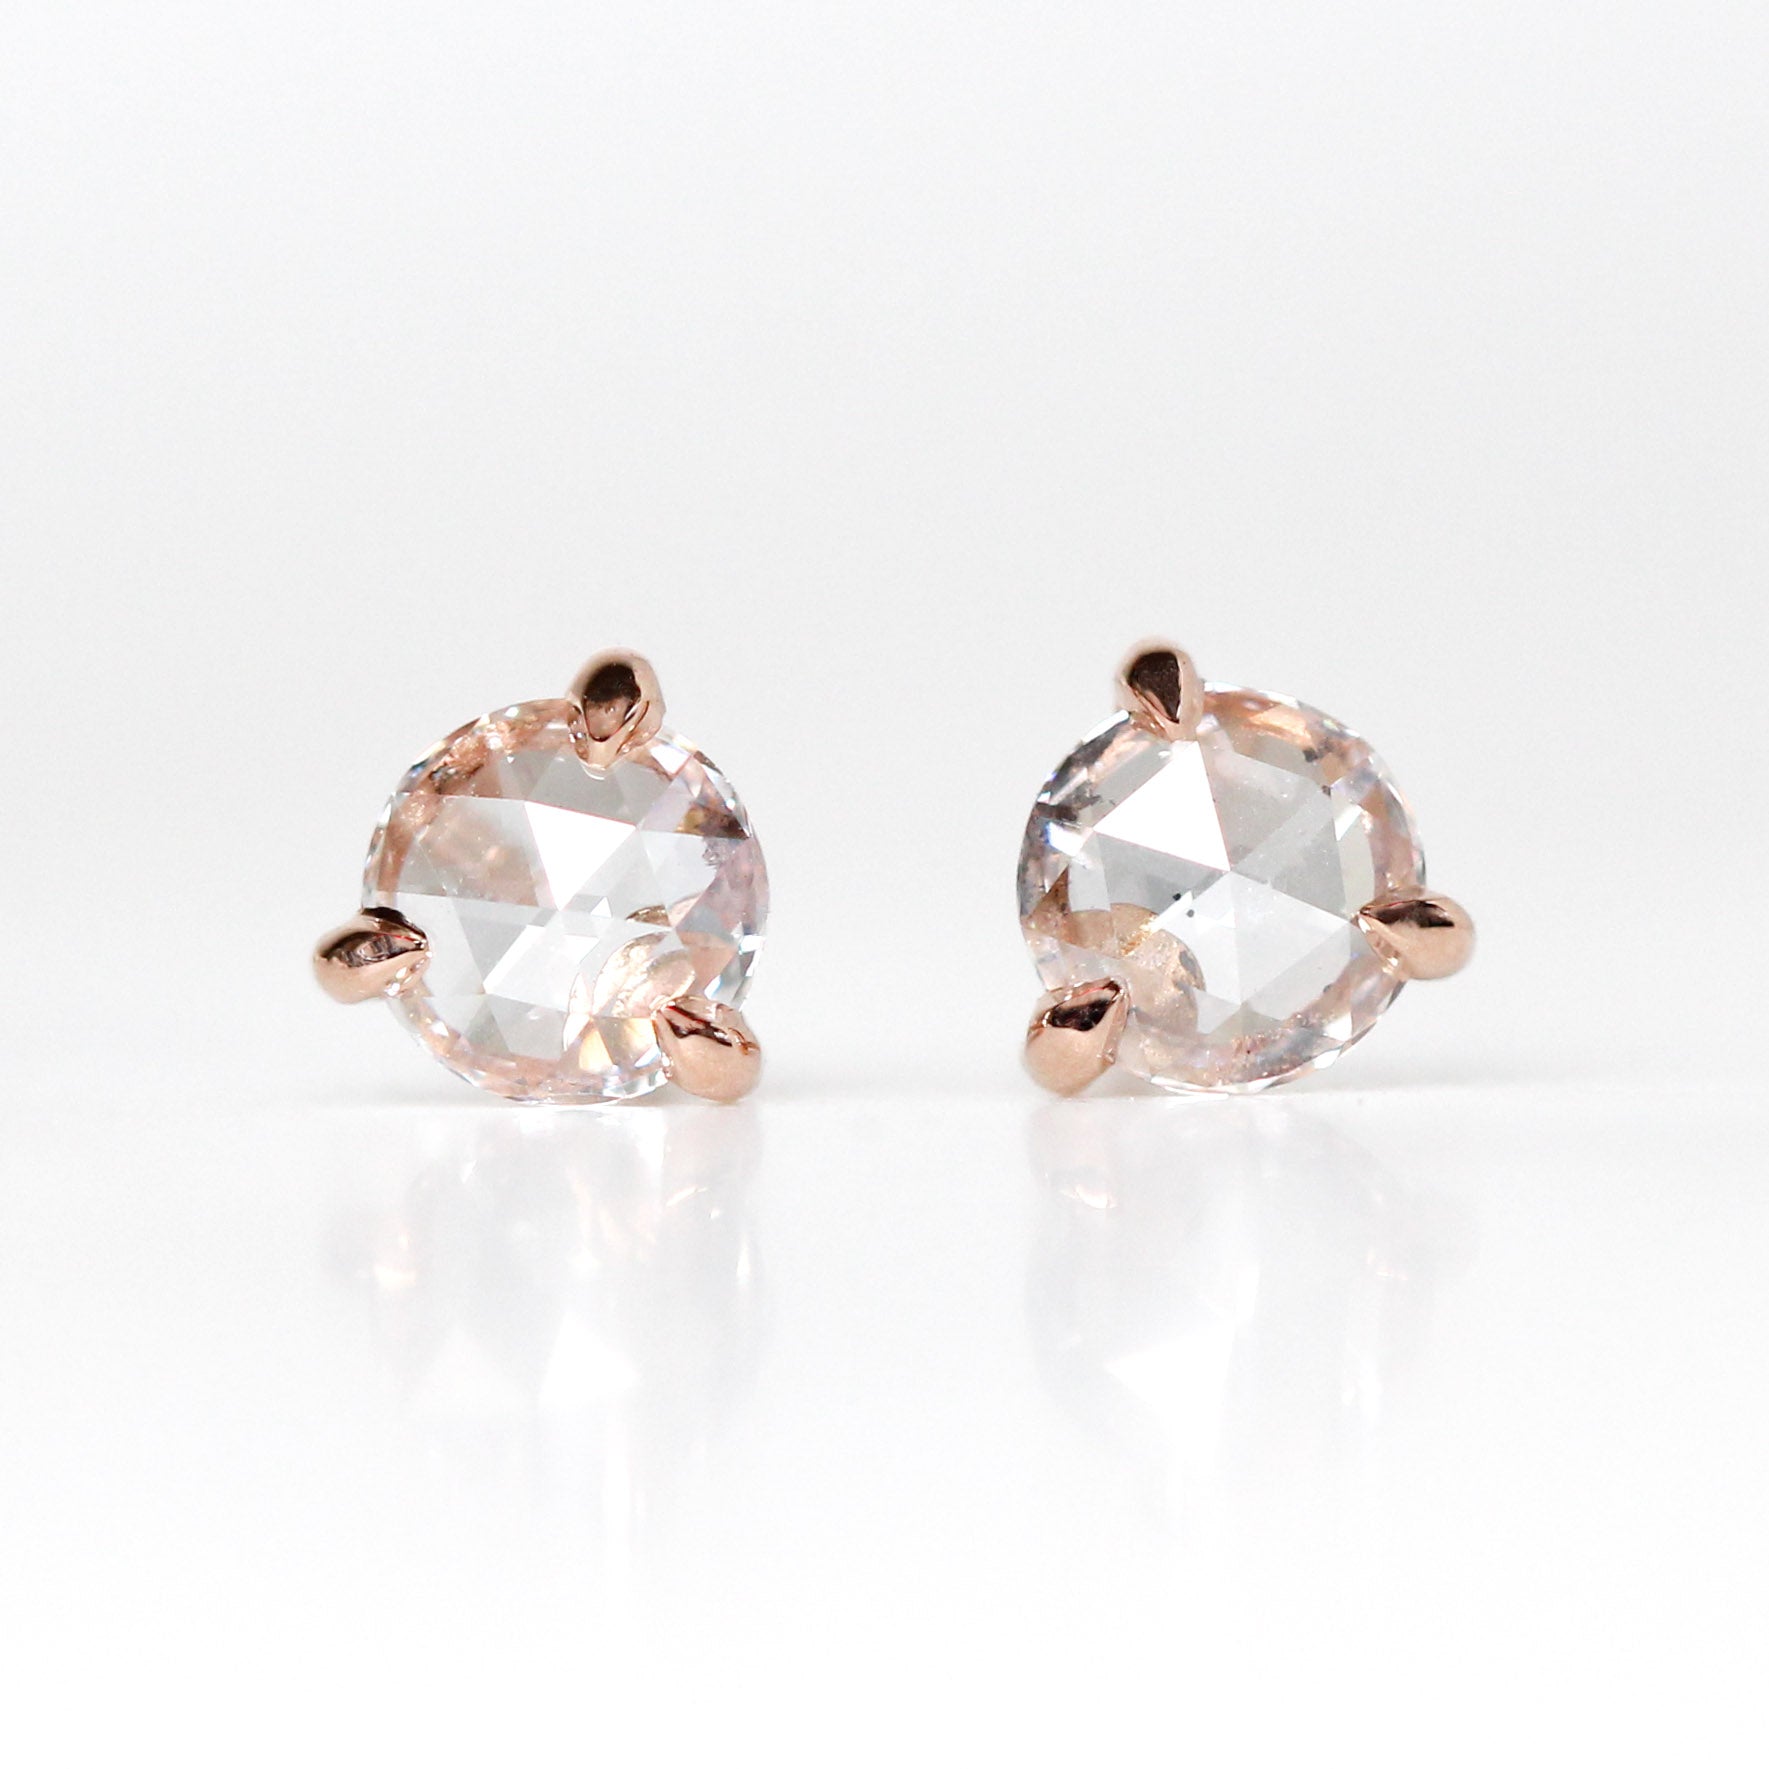 Pair Of Simple Diamond Stud Earrings, 60% OFF